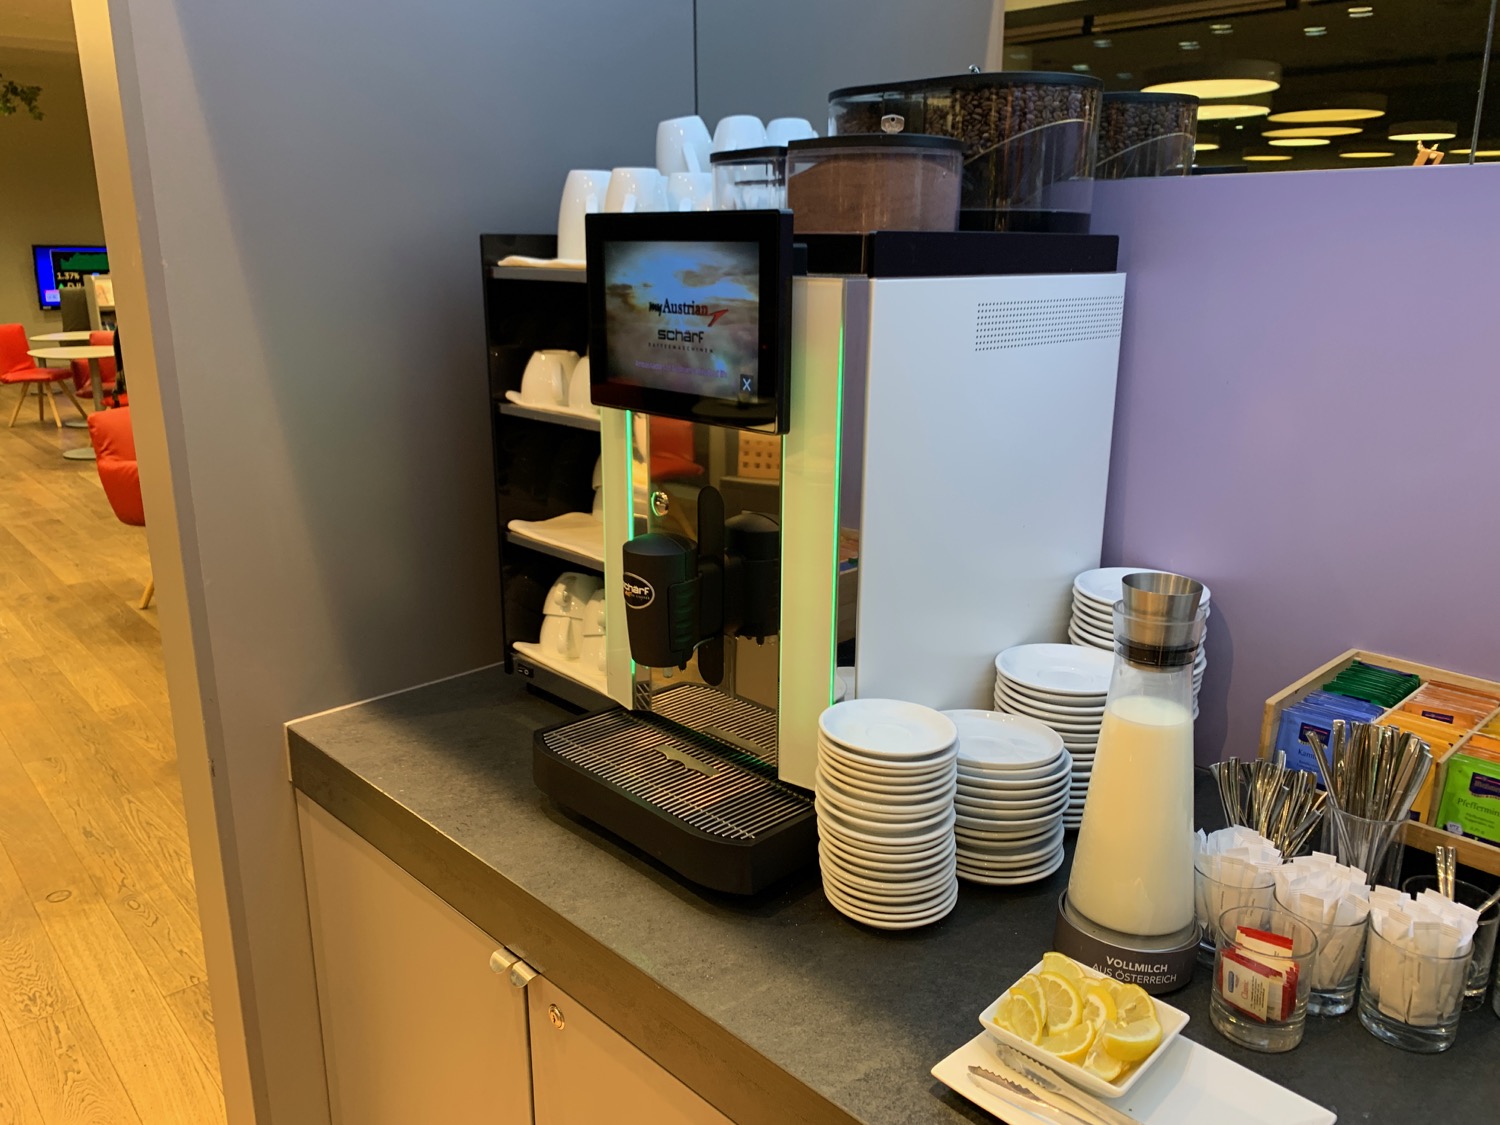 a coffee machine and a shelf of plates